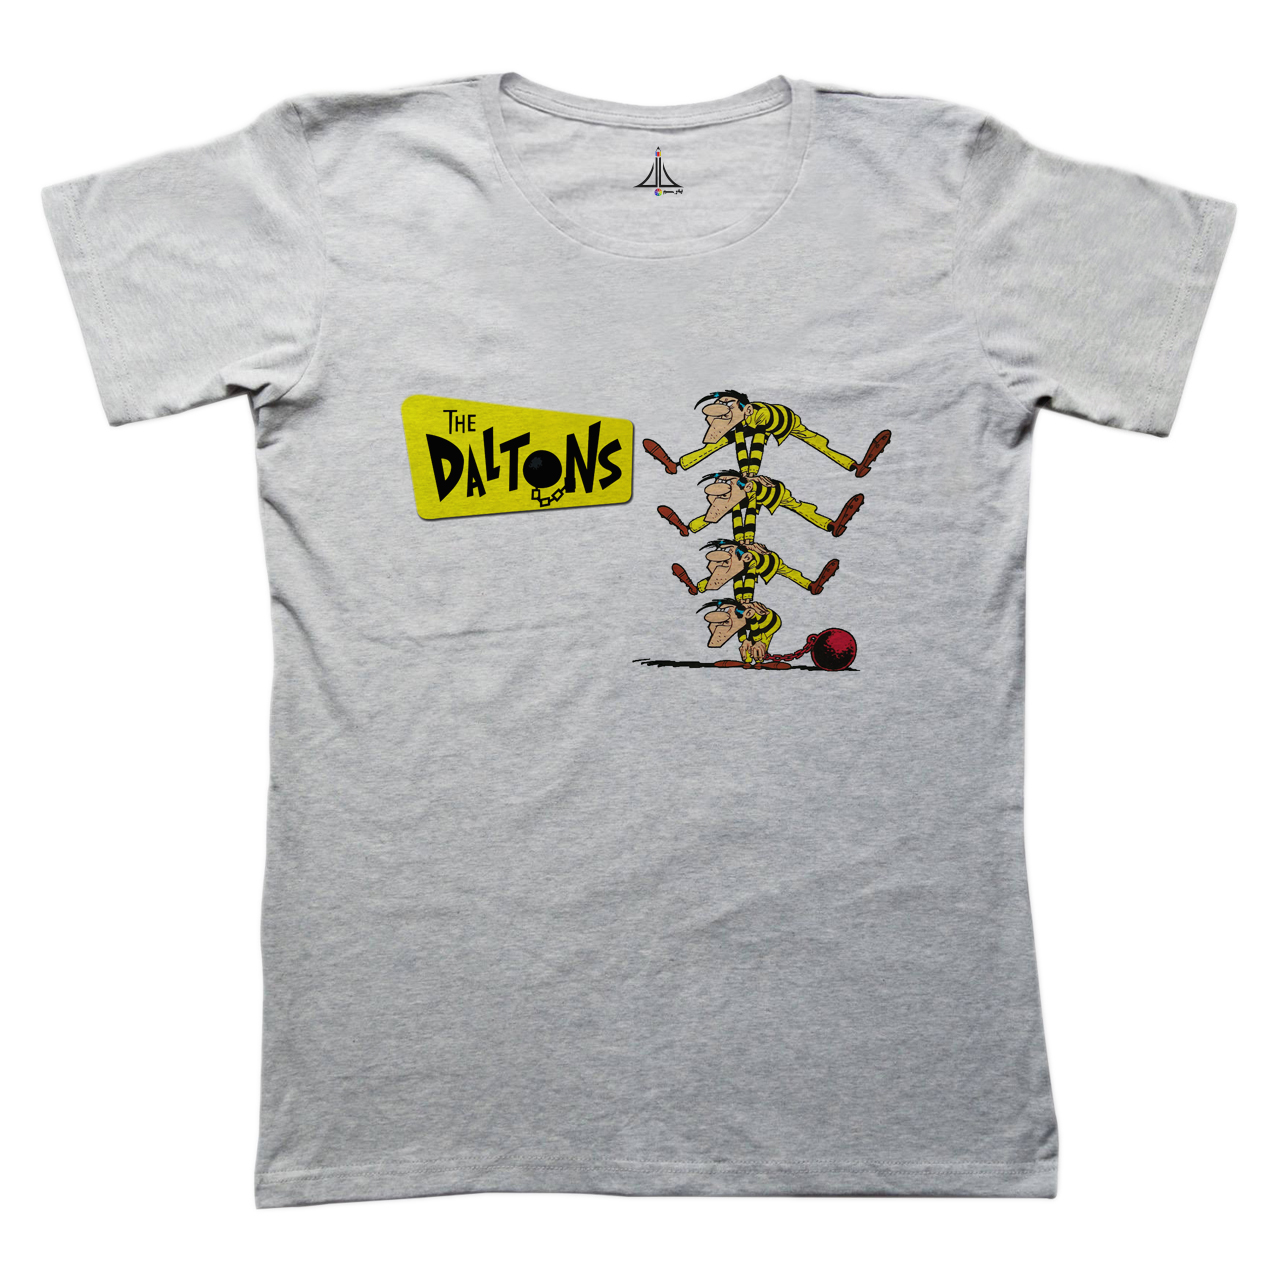 تی شرت مردانه به رسم طرح دالتون ها کد 2268